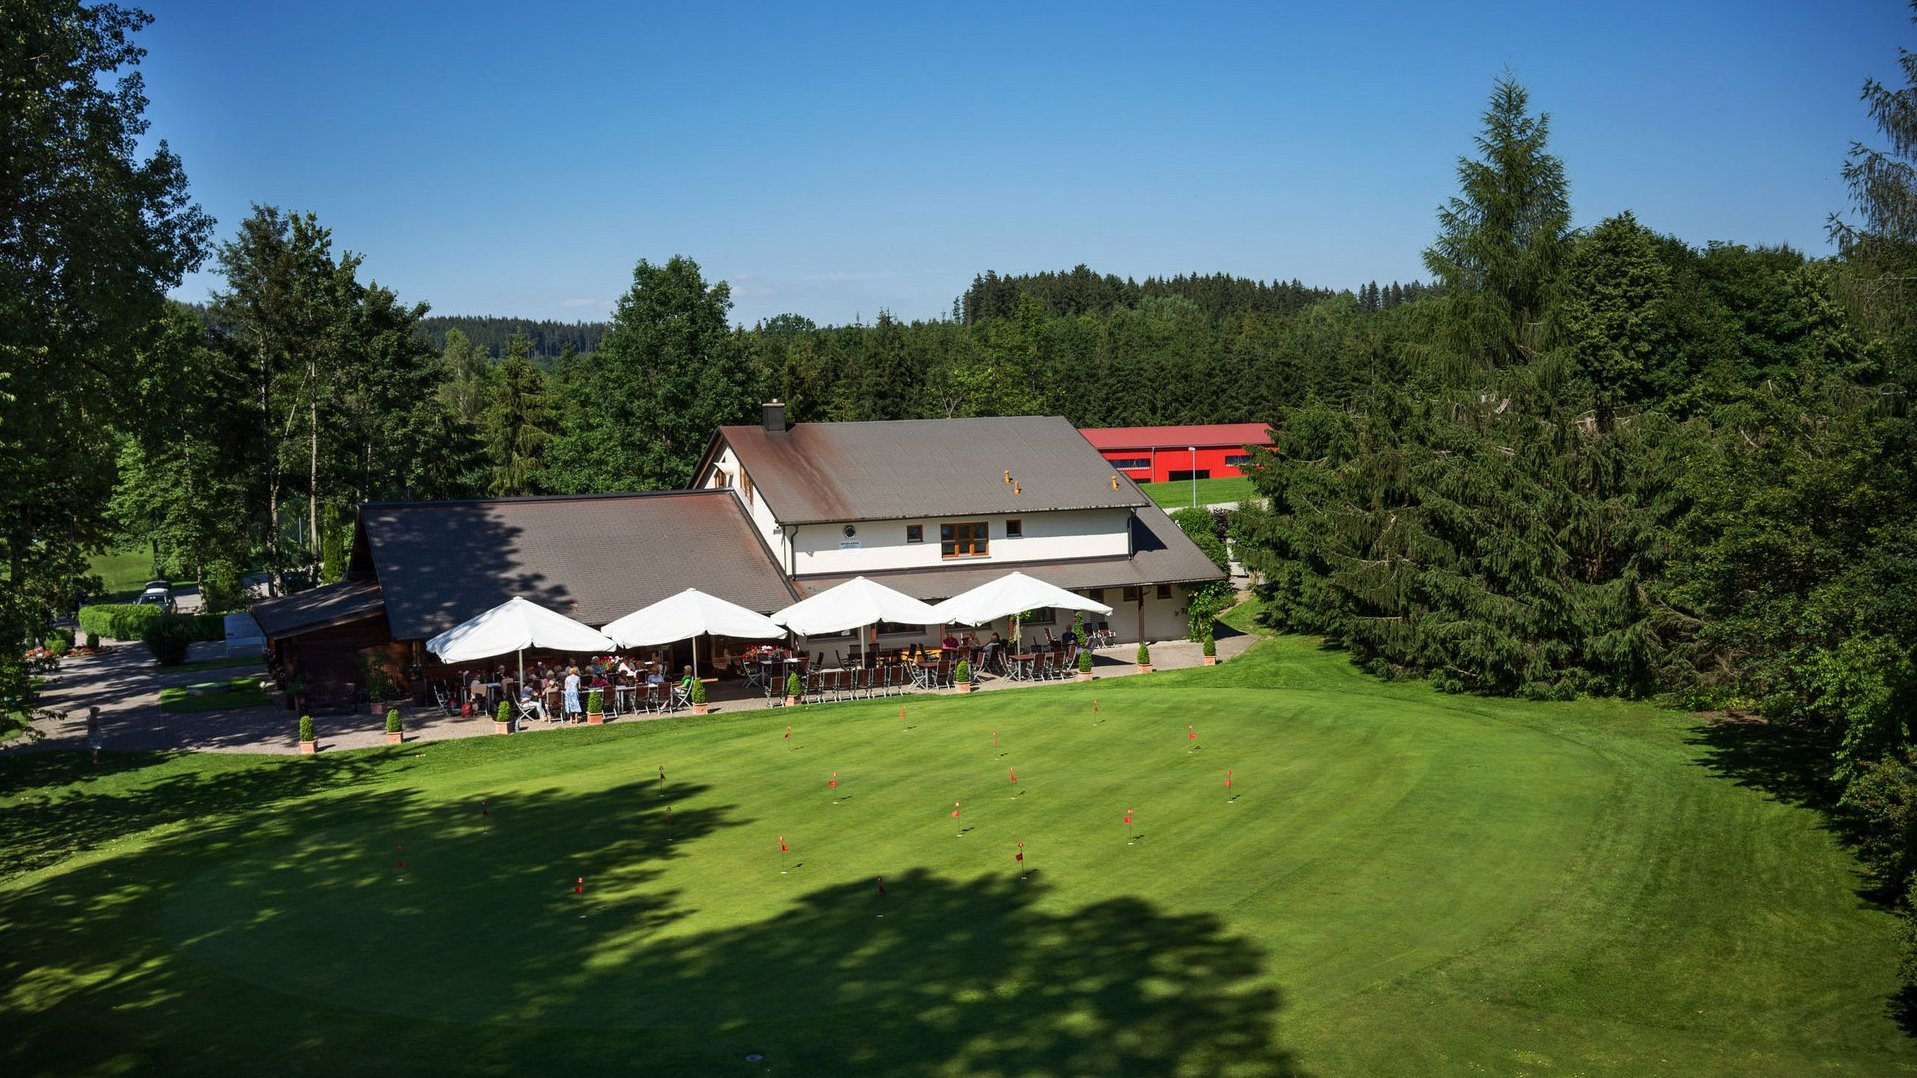 Aufnahme des Clubhauses mit Restaurant des Allgäuer Golf- und Landclub e.V. inkl. Putting Green im Vordergrund